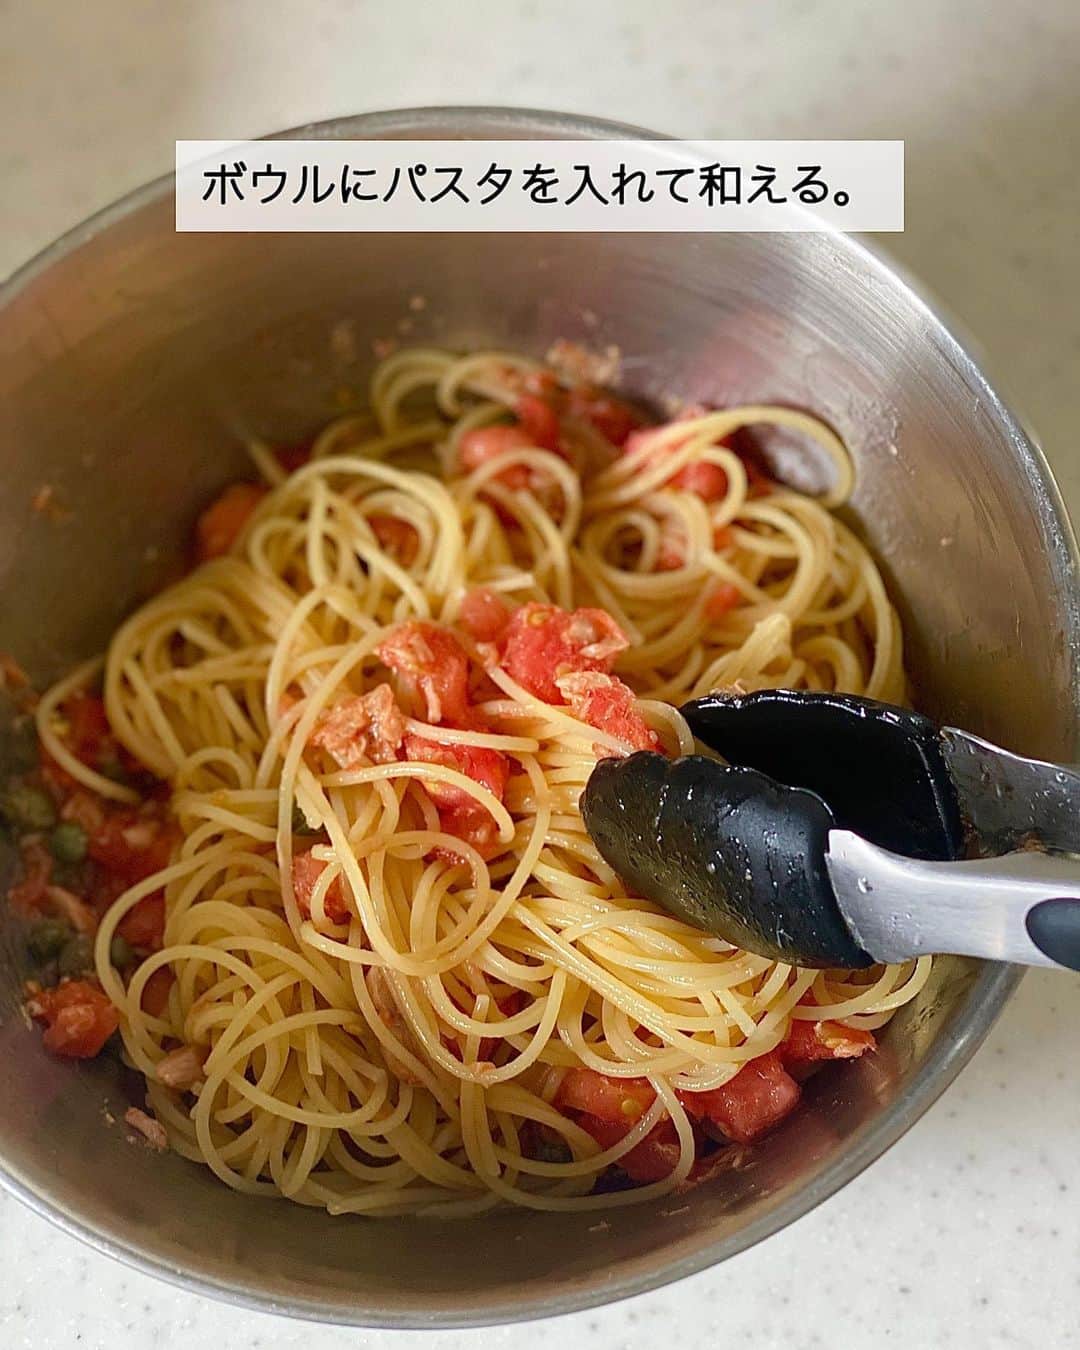 ちおりさんのインスタグラム写真 - (ちおりInstagram)「【この夏食べたい冷製パスタ🍅】 ⁡ ⁡ 他のレシピを見る→ @chiori.m.m をチェック✅ ⁡ ⁡ ━︎━︎━︎━︎━︎━︎━︎━︎━︎━︎━︎━︎━︎━︎━︎━︎━︎ トマトとツナで冷たいプッタネスカ風 ⁡ Nadiaレシピ🆔 460184 ━︎━︎━︎━︎━︎━︎━︎━︎━︎━︎━︎━︎━︎━︎━︎━︎━︎ ⁡ ⁡ ⁡ こんばんは(^^) ⁡ 今日は夏野菜を使った プッタネスカ風の冷製パスタ🍝 ⁡ トマトは湯むきして細かく切り、ツナ缶、 調味料を混ぜ合わせ、パスタと和えたら完成の 超簡単メニューです✨ ⁡ アンチョビの代わりにツナ缶、唐辛子の代わりに 「ピエトロ CHILLIES!」を使って 辛味とうま味をプラスしています。 ⁡ 具材には酢漬けのケーパーも加えていますが なくてもOK。 代わりにお酢少々を足していただけると🙆🏻‍♀️ 食欲が無い日も食べやすく美味しいので 良かったら作ってみてください！ ⁡ ⁡ ⁡ ✎＿＿＿＿＿＿＿＿＿＿＿＿＿＿＿＿＿＿＿＿＿ ⁡ ⁡ 今回のレシピにてピエトロさんの 商品をご紹介するのが最後となりました。 ピエトロさん大ファンなので卒業するのが 寂しいです🥹 ⁡ 長い間ご覧いただきありがとうございました✨ そしてたくさんのレシピをお試しいただき 感謝の気持ちでいっぱいです🙇🏻‍♀️ ⁡ 今後もNadiaさんではピエトロキャンパスは続き 新しい料理家さんが美味しいレシピをお届けしてくれますので楽しみにしていてくださいね^ ^ ⁡ ⁡ ________________________________________ ⁡ ⁡ ✍︎ ✍︎recipe ✍︎ ✍︎ ⁡ ⁡ 👩‍🌾【材料】2人分 •ピエトロ AGNESI(アネージ) スパゲティーニ…160g •トマト…………………………2個（300g） •ツナ缶（油漬け）…………1缶（70g） •あればケーパー……………20g •青ねぎ…………………………適量 Aオリーブオイル……………大さじ2 A砂糖、コンソメ顆粒………各小さじ1 Aにんにくチューブ…………小さじ1/2 A塩………………………………ふたつまみ A ピエトロCHILLIES ! ………適量 ⁡ ⁡ ________________________________________ ⁡ ⁡ ⁡ 👩‍🍳【作り方】 ❶鍋に湯を沸かし、トマトを入れる。20秒ほどして皮がめくれてきたら取り出し、冷水に浸けて皮をむく。1cm角に切る。 ⁡ ❷ボウルに❶、ツナ缶（オイルごと）、あればケーパー、【A】を入れて混ぜる。 ⁡ ❸鍋にたっぷりの湯を沸かして塩(分量外)を袋の表示通りに入れ、「ピエトロ AGNESI(アネージ) スパゲティーニ 1.5mm」を表示時間通りにゆでる。湯切りし、流水で冷やしてよく水気を切る。 ⁡ ❹、❷のボウルに❸を入れて和える。 器に盛り、小口切りにした青ねぎを散らし お好みで粗びき黒こしょうをふる。 ⁡ ⁡ ⁡ ________________________________________ ⁡ ⁡ ⁡ 📝【POINT】 •ケッパーを使わない場合はお酢を少々加えてください。 ⁡ •砂糖、塩の量はお好みで調整してください。 ⁡ •ピエトロ CHILLIES! はさらに仕上げにかけても美味しいです。 ⁡ ⁡ ⁡ ≡︎≡︎≡︎≡︎≡︎≡︎≡︎≡︎≡︎≡︎≡︎≡︎≡︎≡︎≡︎≡︎≡︎≡︎≡︎≡︎≡︎≡︎≡︎≡︎≡︎≡︎≡︎≡︎≡︎≡︎≡︎≡︎≡︎≡︎ 【✅新刊レシピ本のお知らせ】 📕ちおり流くり返し作りたいおかず 🙇🏻‍♀️おかげ様で書籍累計10万部を突破しました。 ⁡ ⁡ 全国の書店、Amazon、楽天ブックス 宝島チャンネルにて発売中です。 ⁡ ➤ ➤ ➤ @chiori.m.m のストーリーハイライト。 プロフィールのリンクからご覧いただけます😊 📗ちおりの簡単絶品おかず１、２ 既刊もぜひご覧いただきたいです。 ⁡ ≡︎≡︎≡︎≡︎≡︎≡︎≡︎≡︎≡︎≡︎≡︎≡︎≡︎≡︎≡︎≡︎≡︎≡︎≡︎≡︎≡︎≡︎≡︎≡︎≡︎≡︎≡︎≡︎≡︎≡︎≡︎≡︎≡︎≡︎ ⁡ ⁡ 最後までご覧いただきありがとうございます☺️ ⁑ ⁑ ⁑ ⁑ ⁑ ⁑ ⁑ #ピエトロタイアップ #ピエトロキャンパス  #ピエトロ #パスタランチ #パスタレシピ  #Nadiaレシピ #Nadiaartist #トマトレシピ  #おうちごはん #いえごはん #パスタ  #おうちごはんLover #おつまみレシピ #トマトパスタ #冷製パスタ #冷製パスタレシピ   #簡単レシピ #節約レシピ #簡単ランチ  #簡単ごはん #料理レシピ #料理初心者  #ツナ缶 #ツナ缶レシピ #パスタ好き」6月9日 21時11分 - chiori.m.m